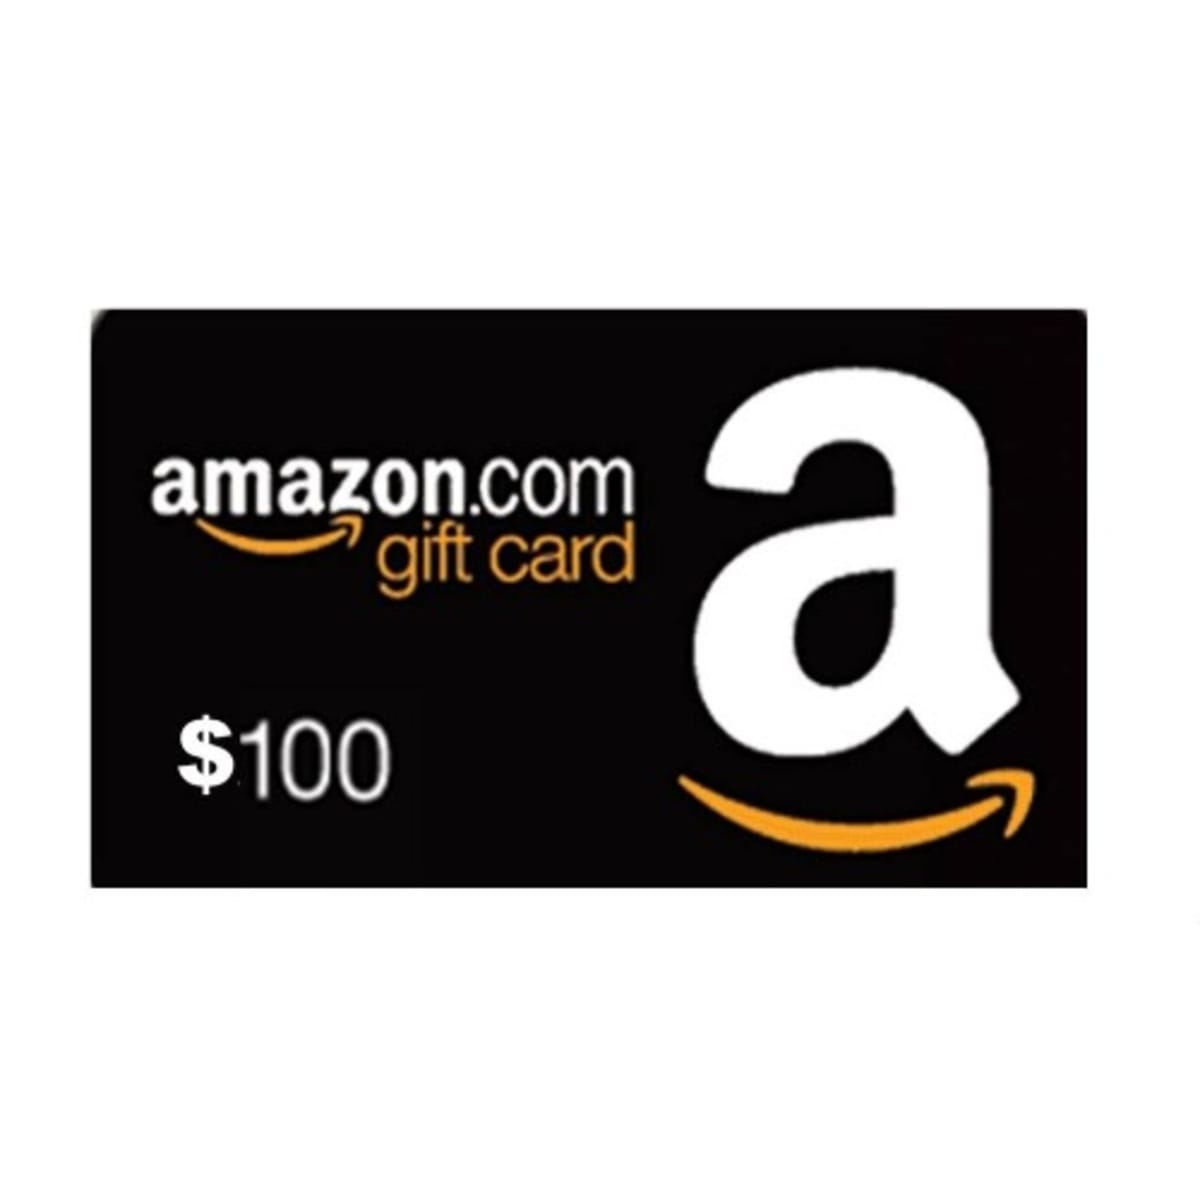 Share more than 132 check amazon gift card balance